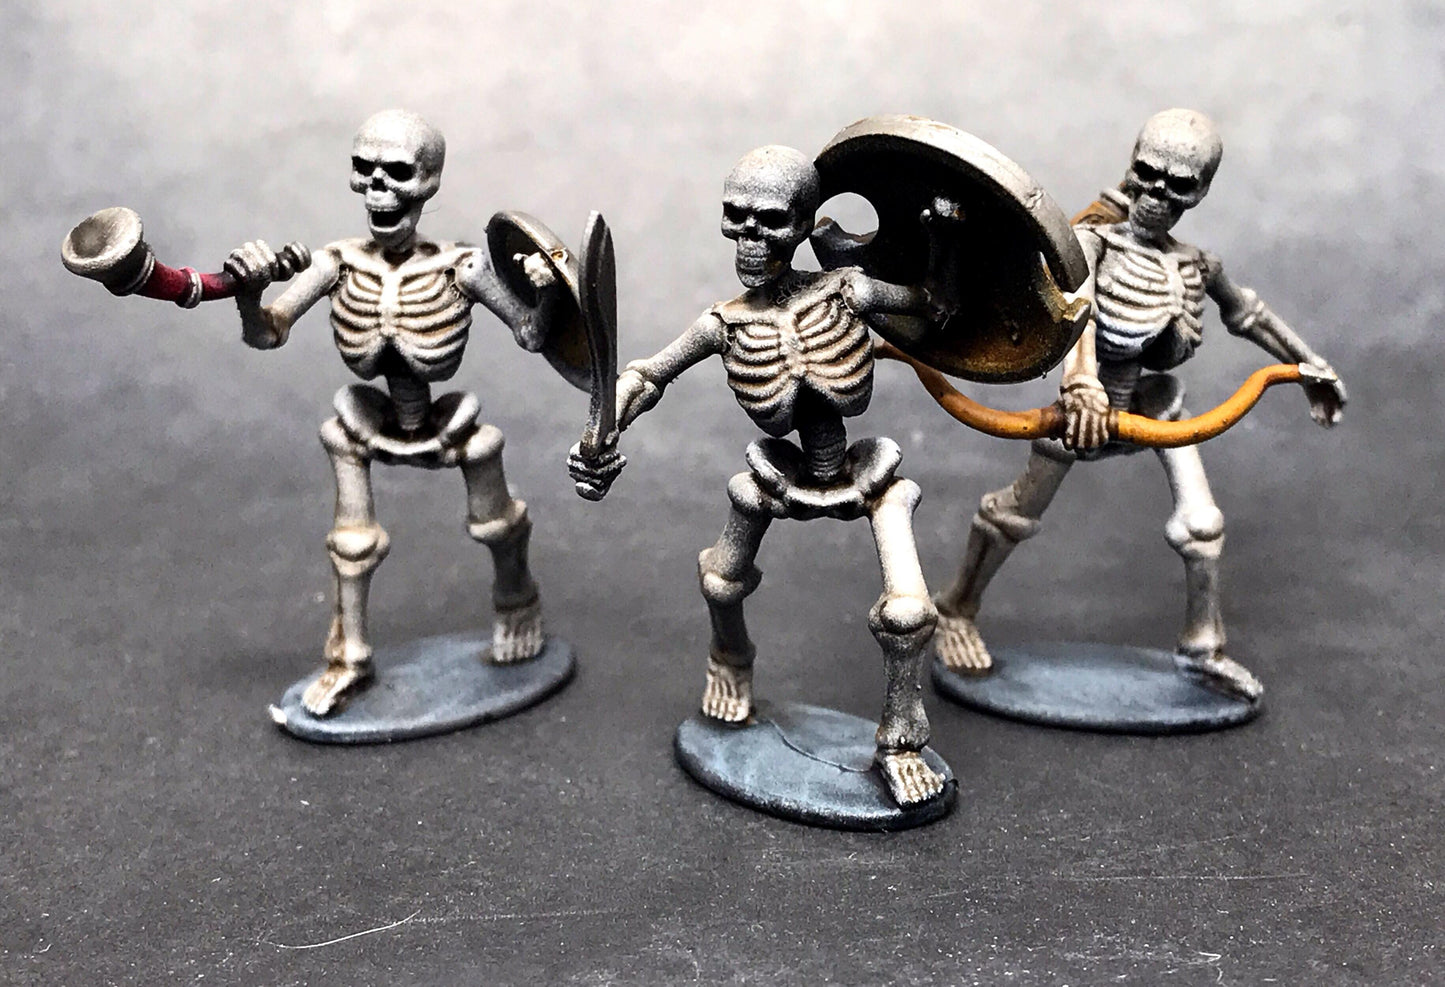 Skeleton Warriors boxed set